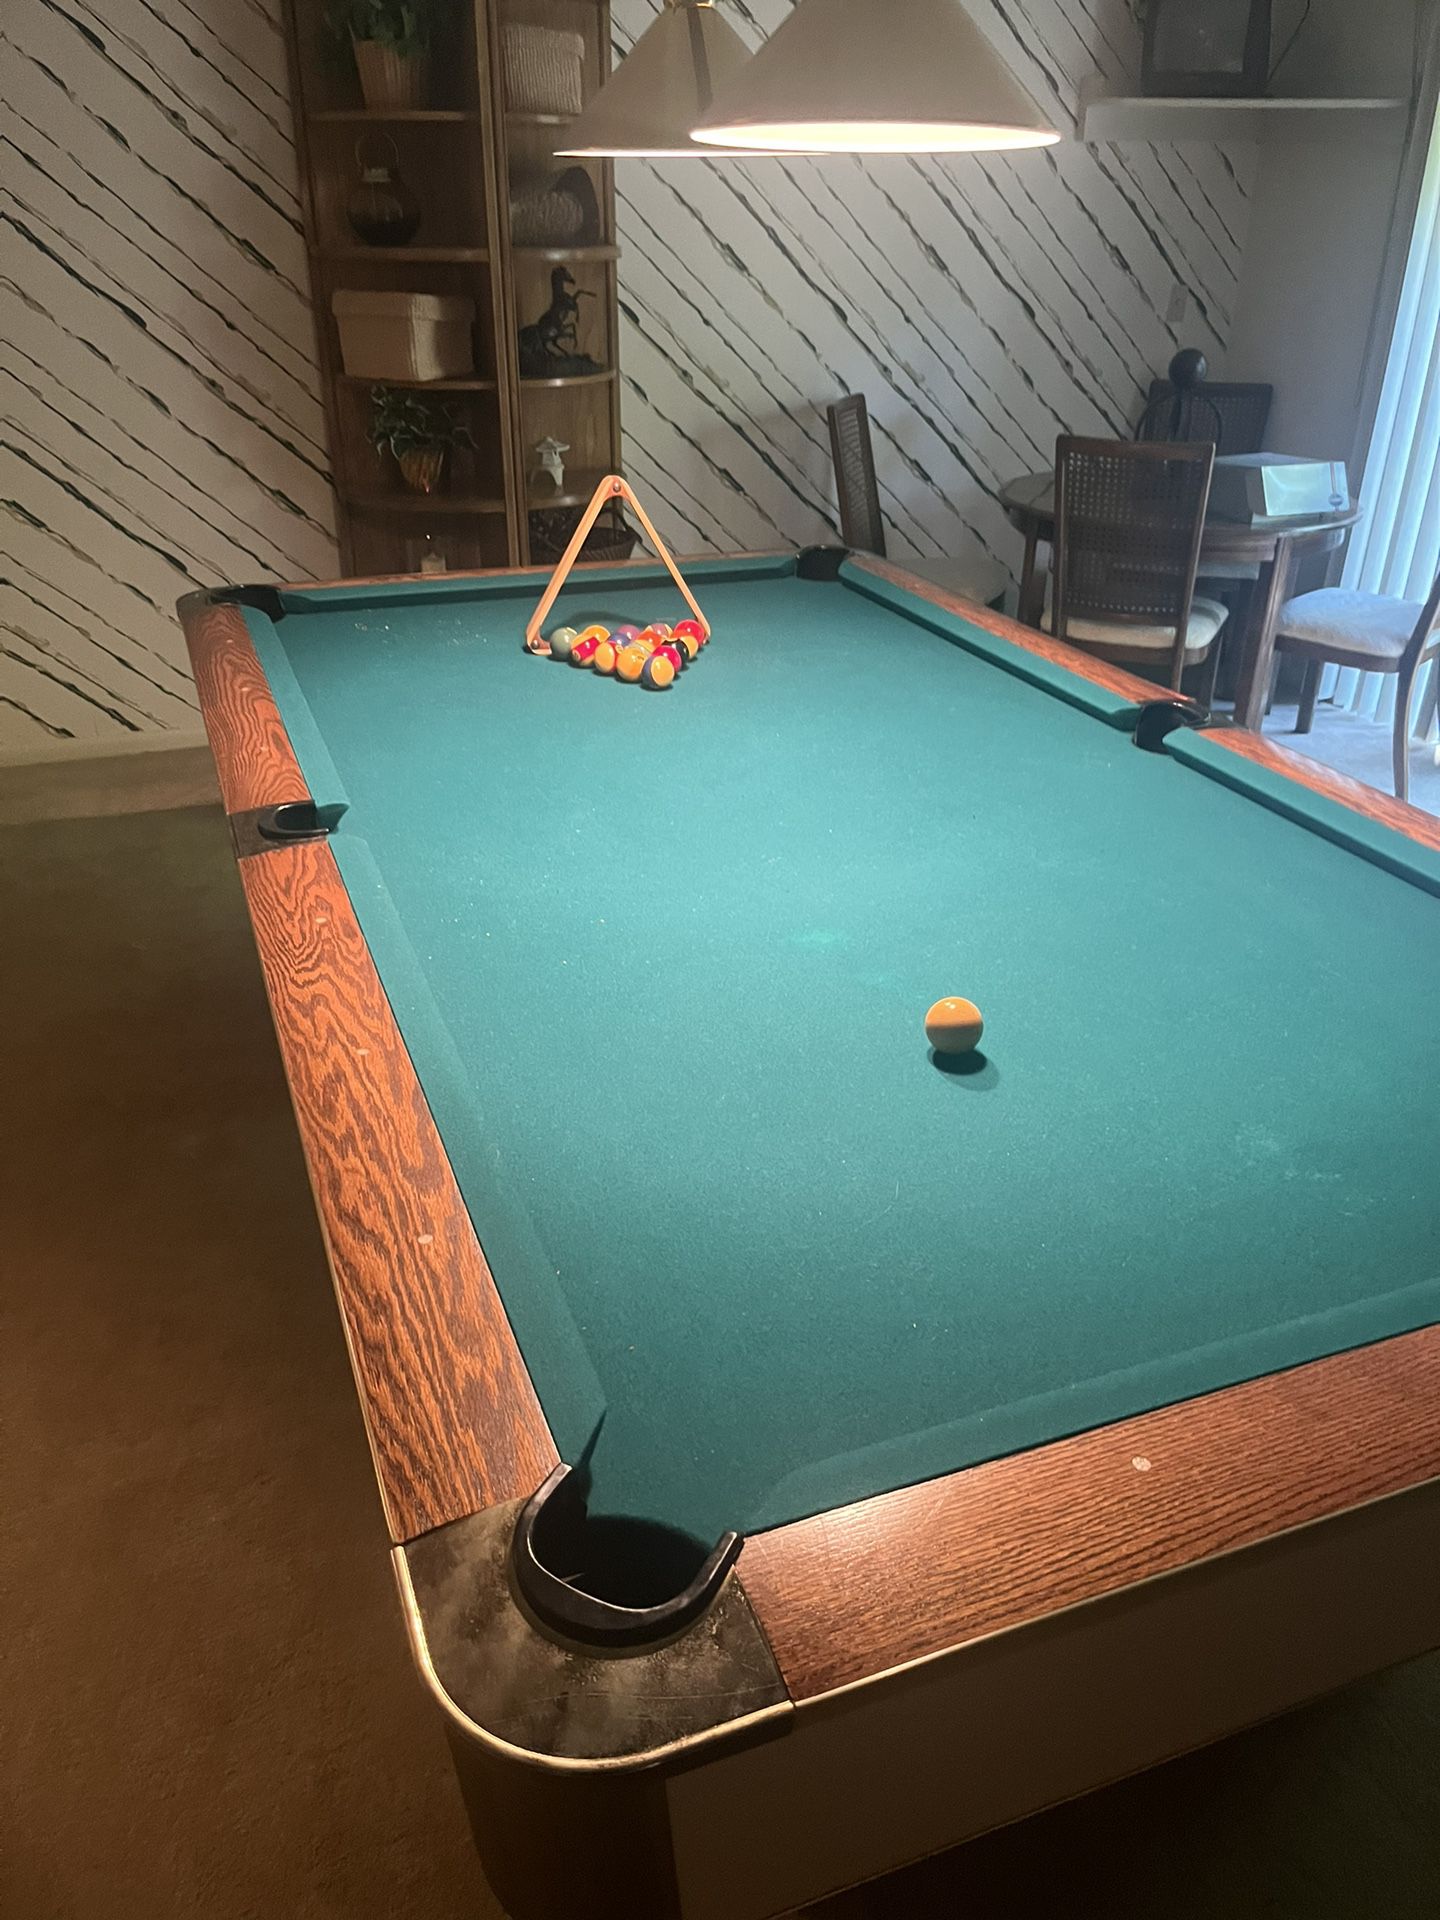 Billiard (Pool Table)